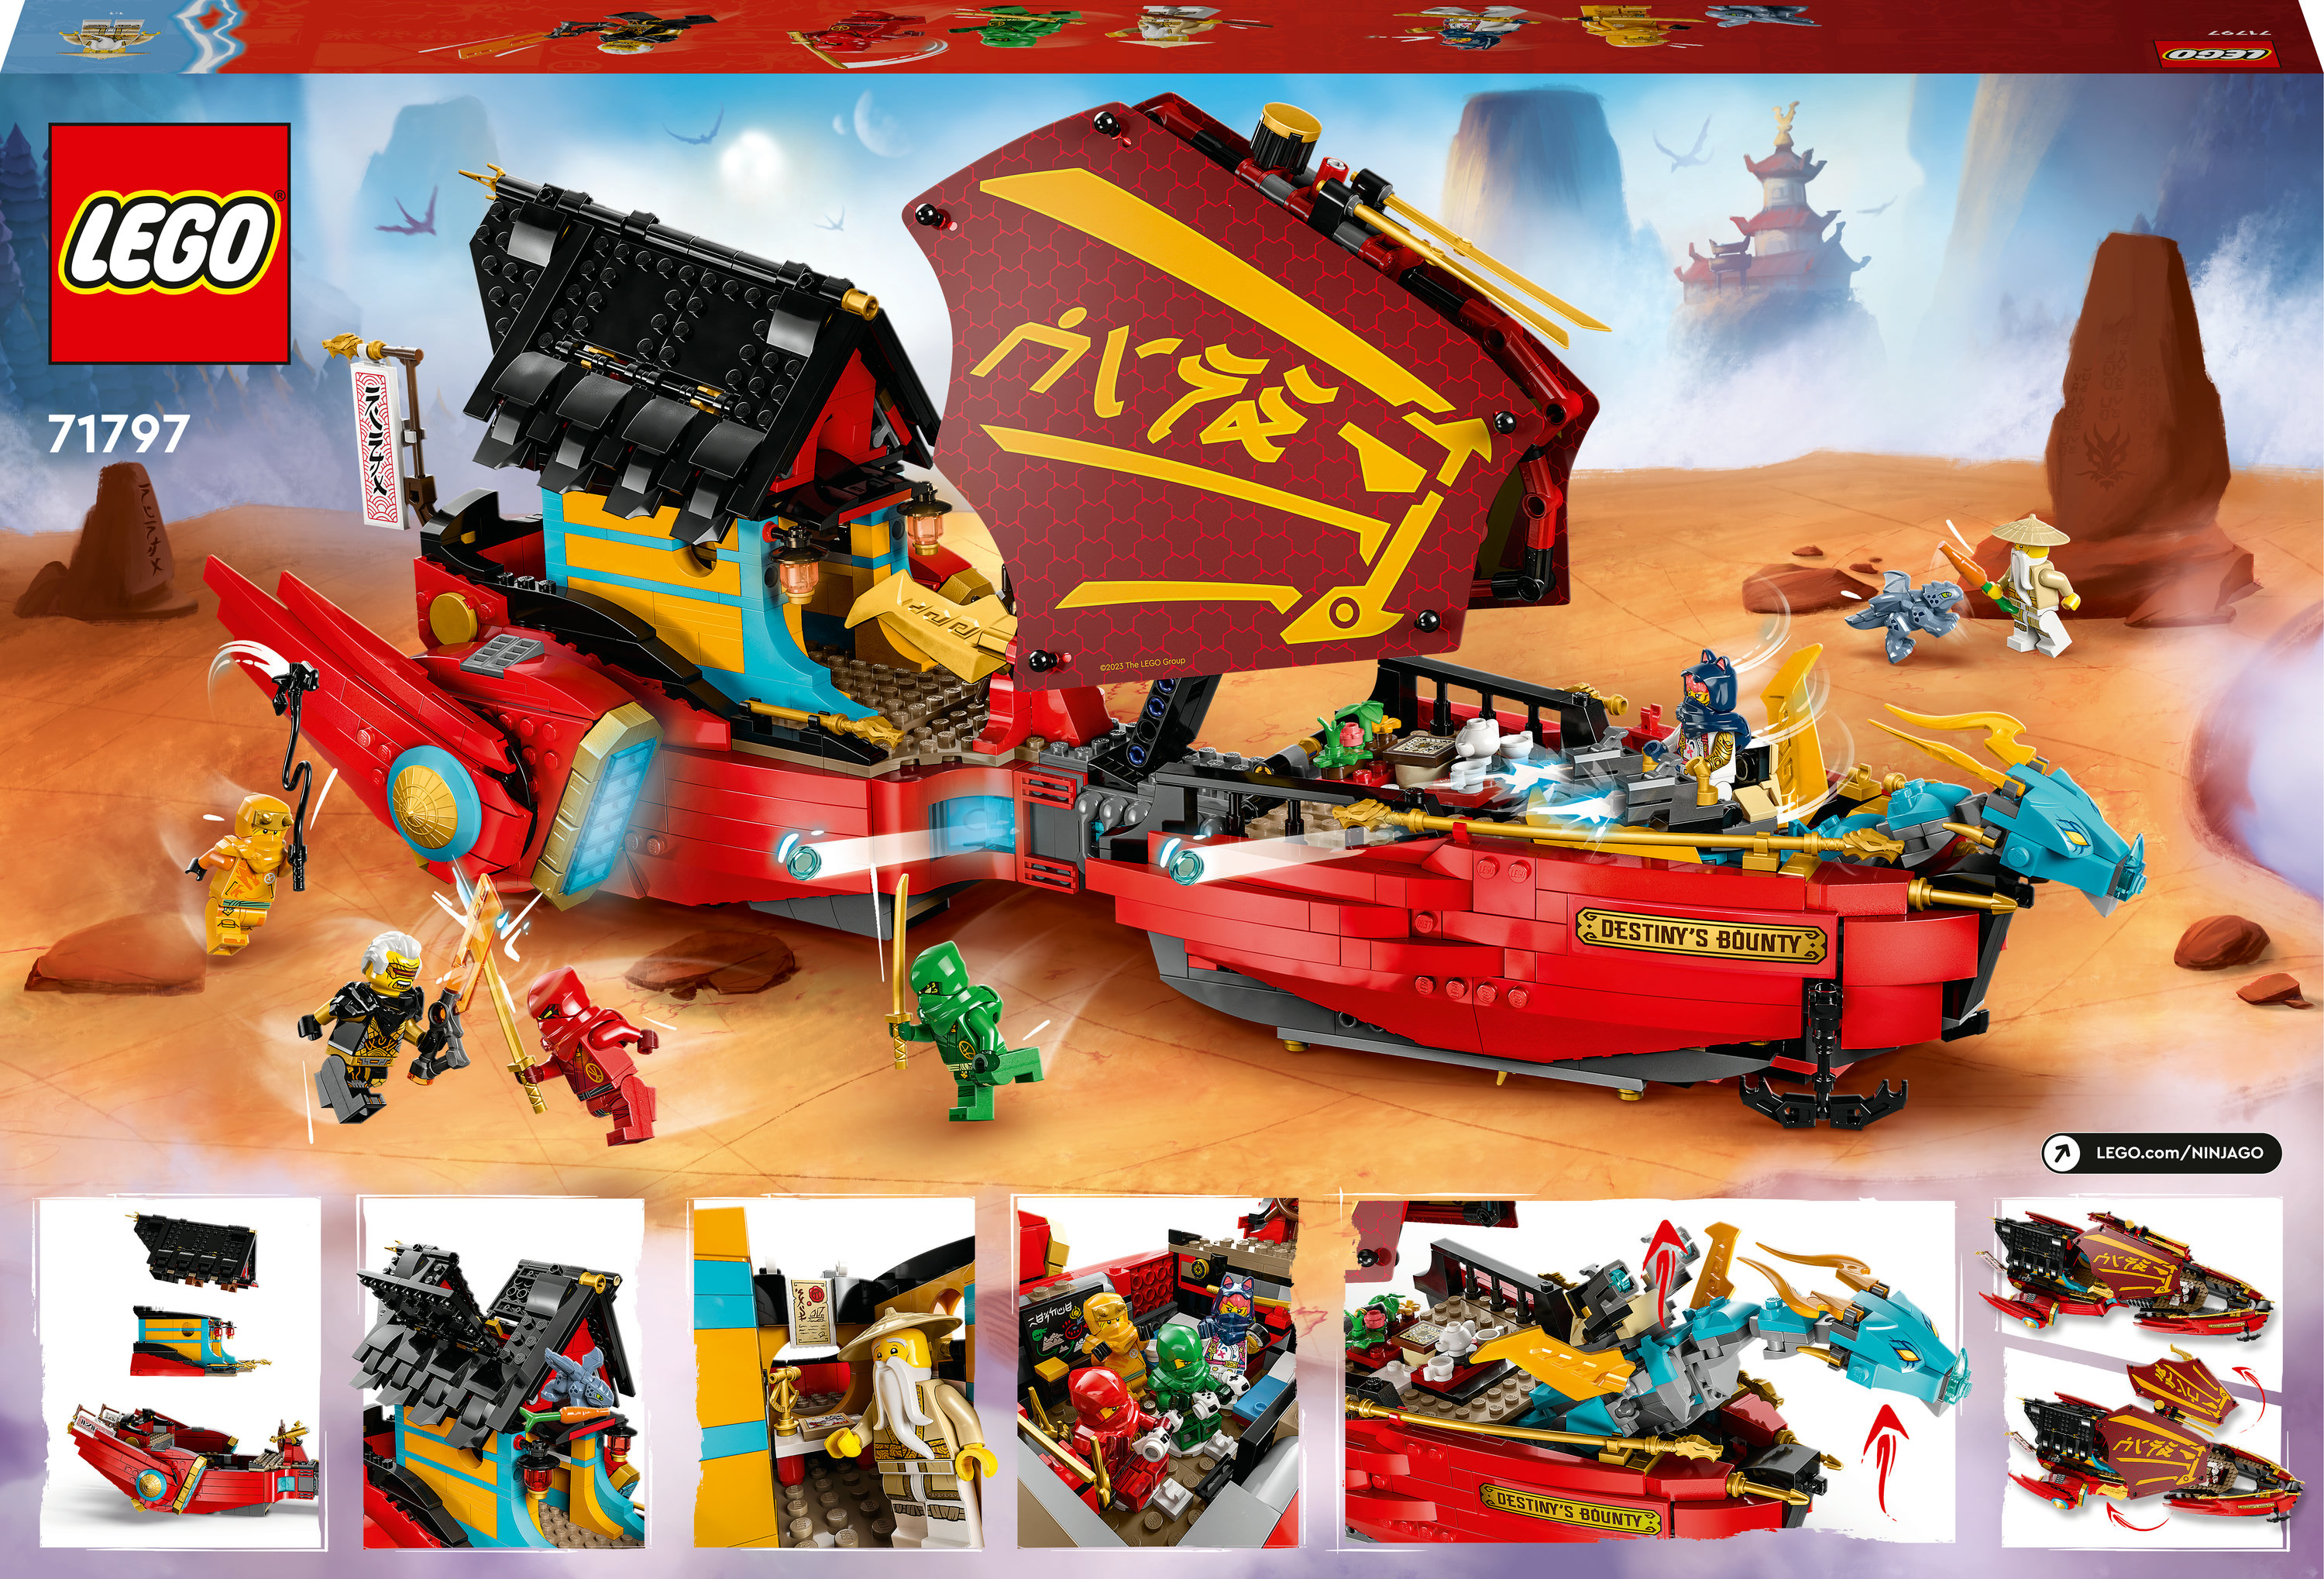 Конструктор LEGO Ninjago Дар судьбы - гонки со временем, 1739 деталей (71797) - фото 9